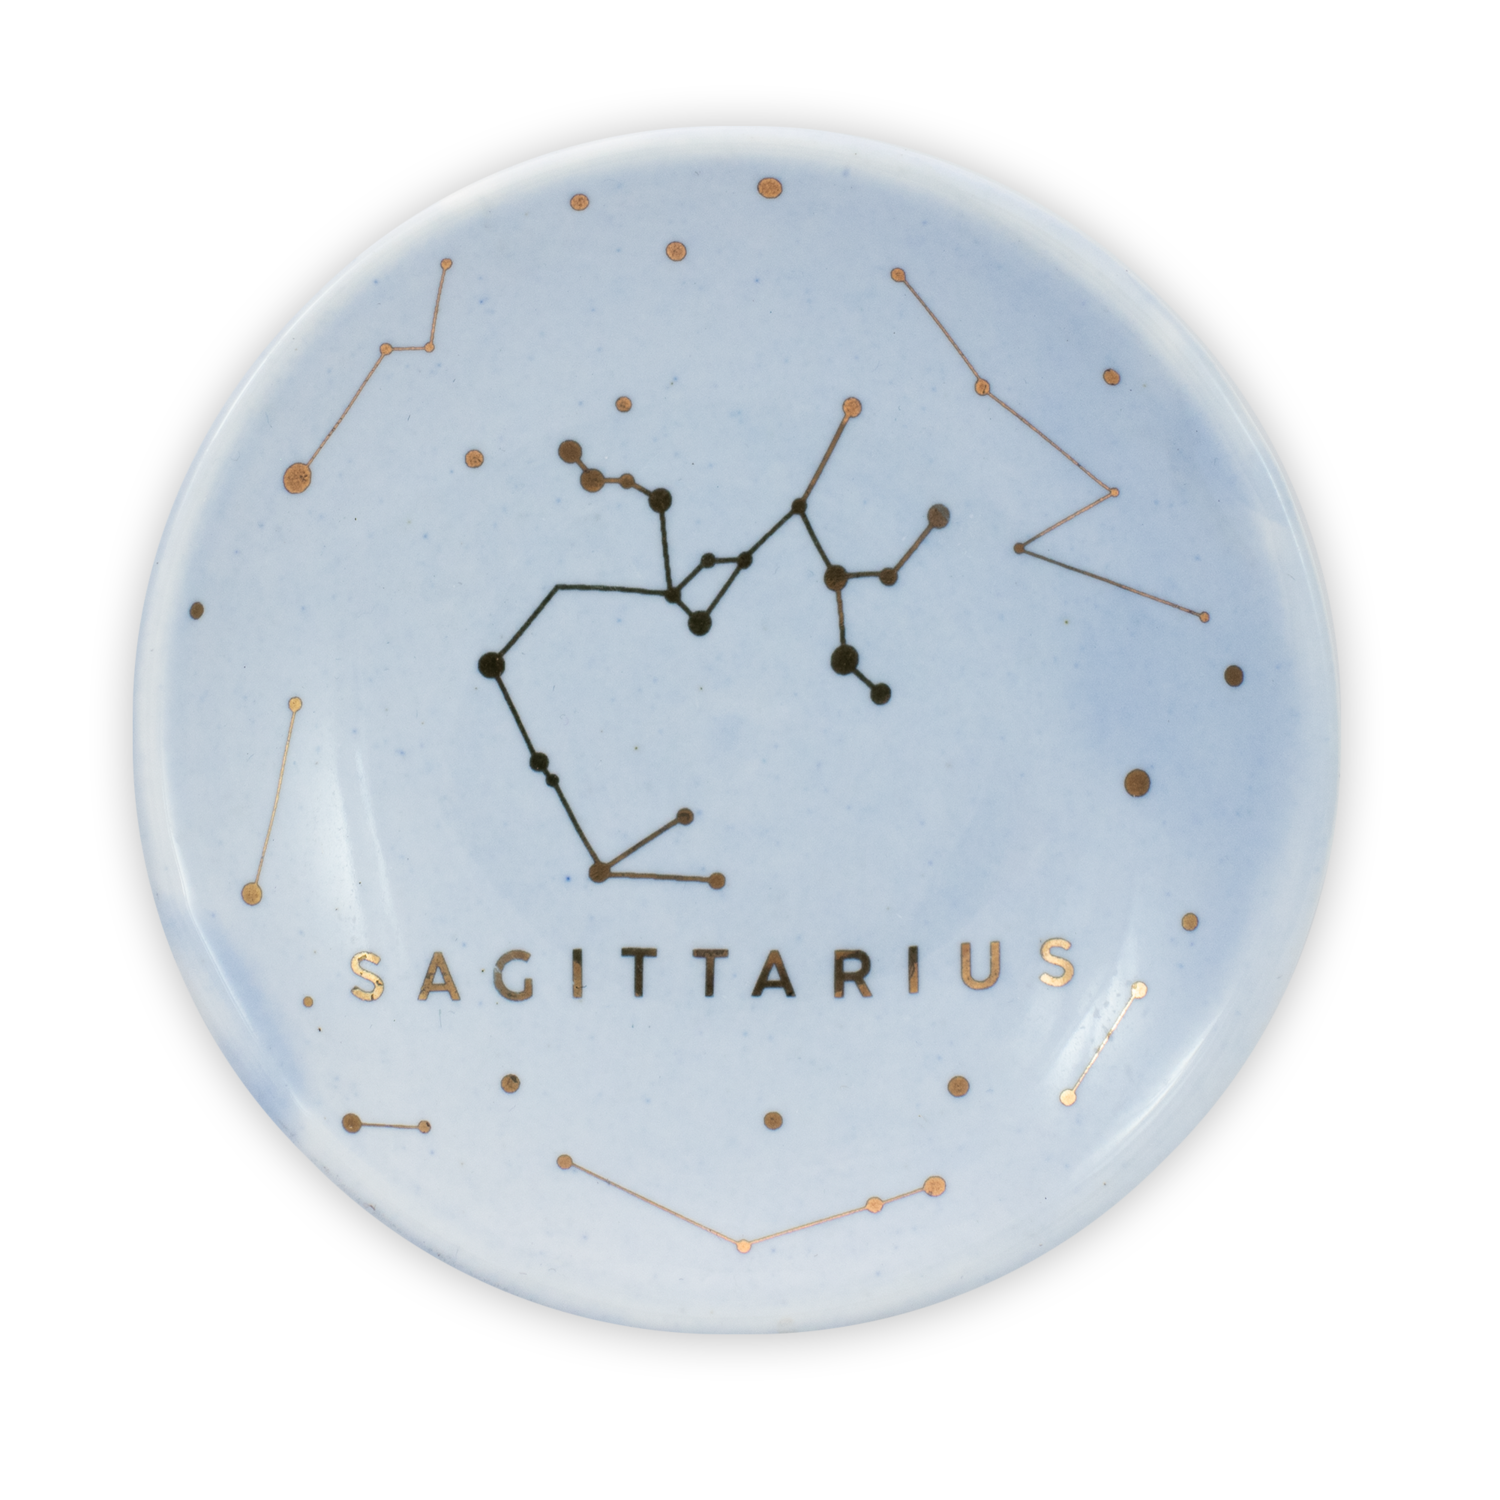 Sagittarius Ceramic Ring Dish - DSH-SAG